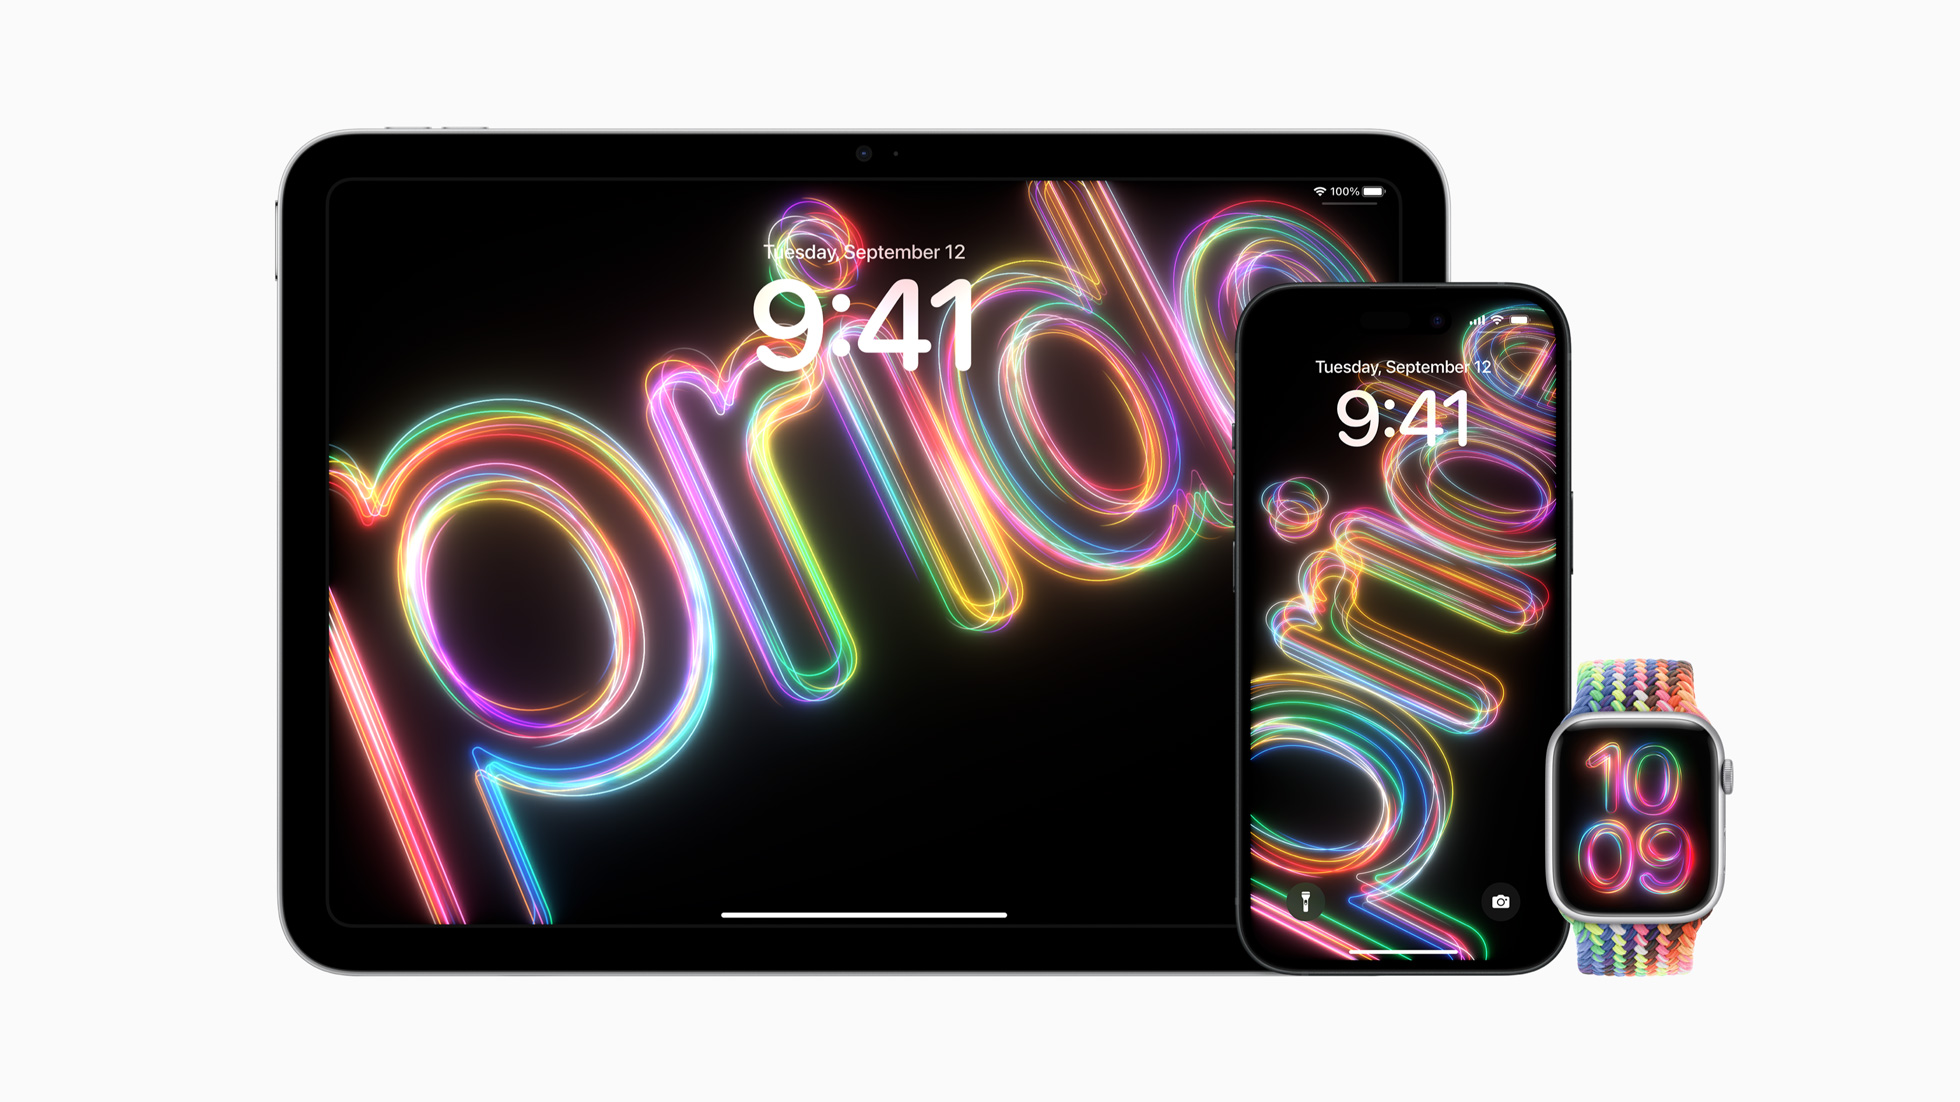 Nowy pasek i tarcze dla Apple Watch oraz dynamiczne tapety na iOS i iPadach wsparciem dla społeczności LGBTQ+